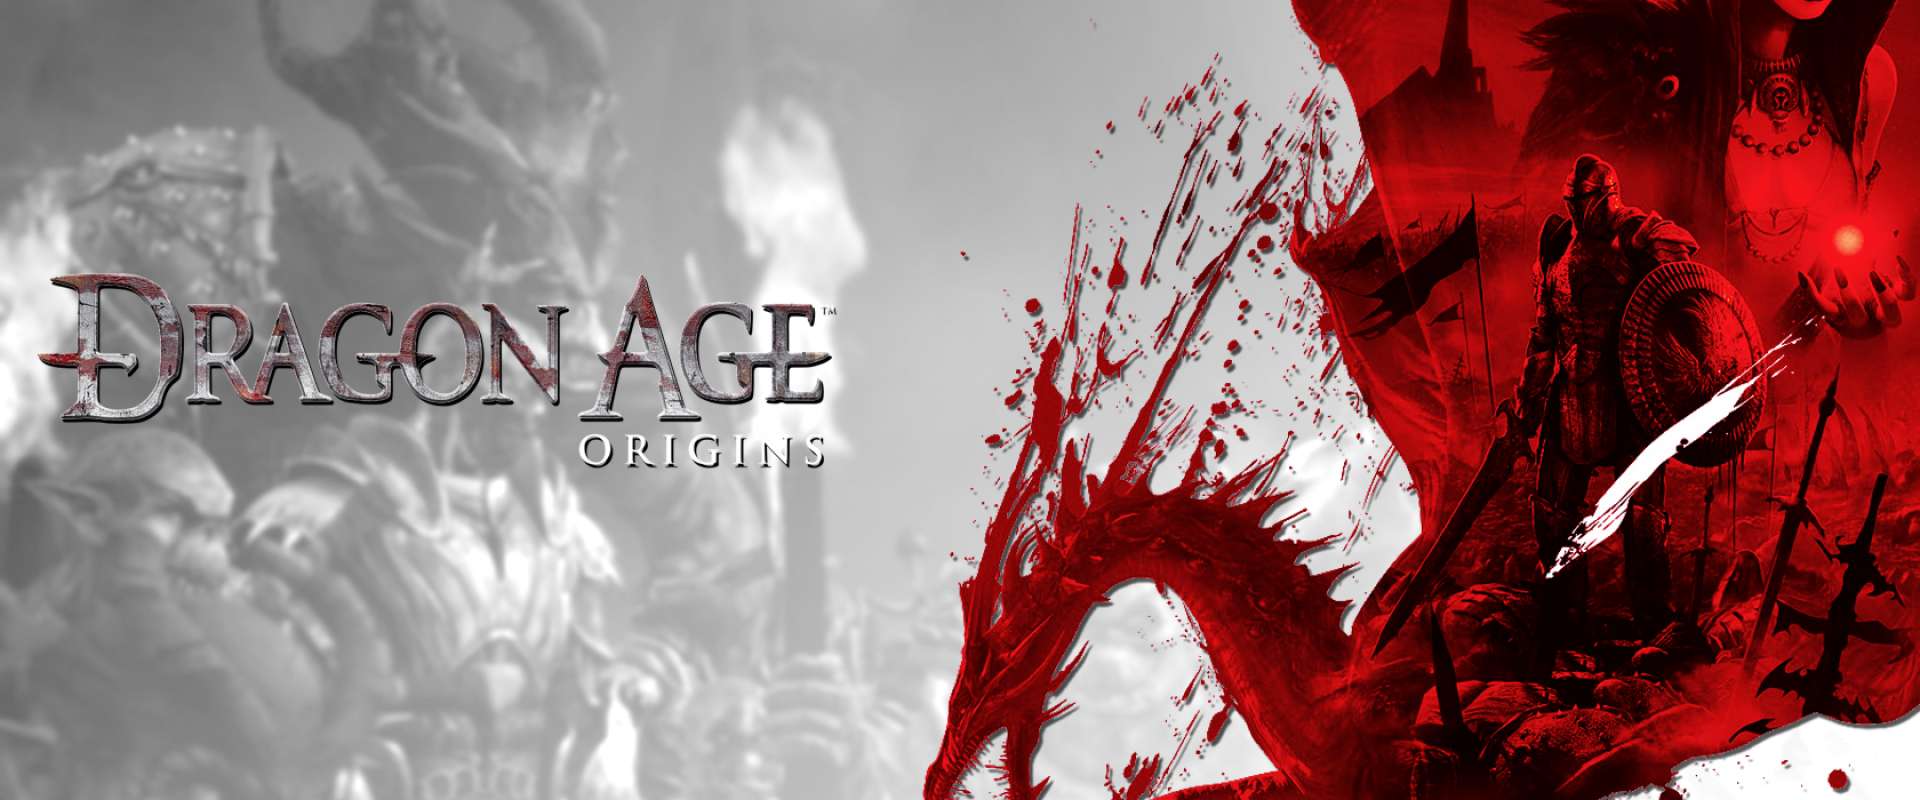 Baixar Tradução Completa Dragon Age: Origins (Jogo base + Expansão